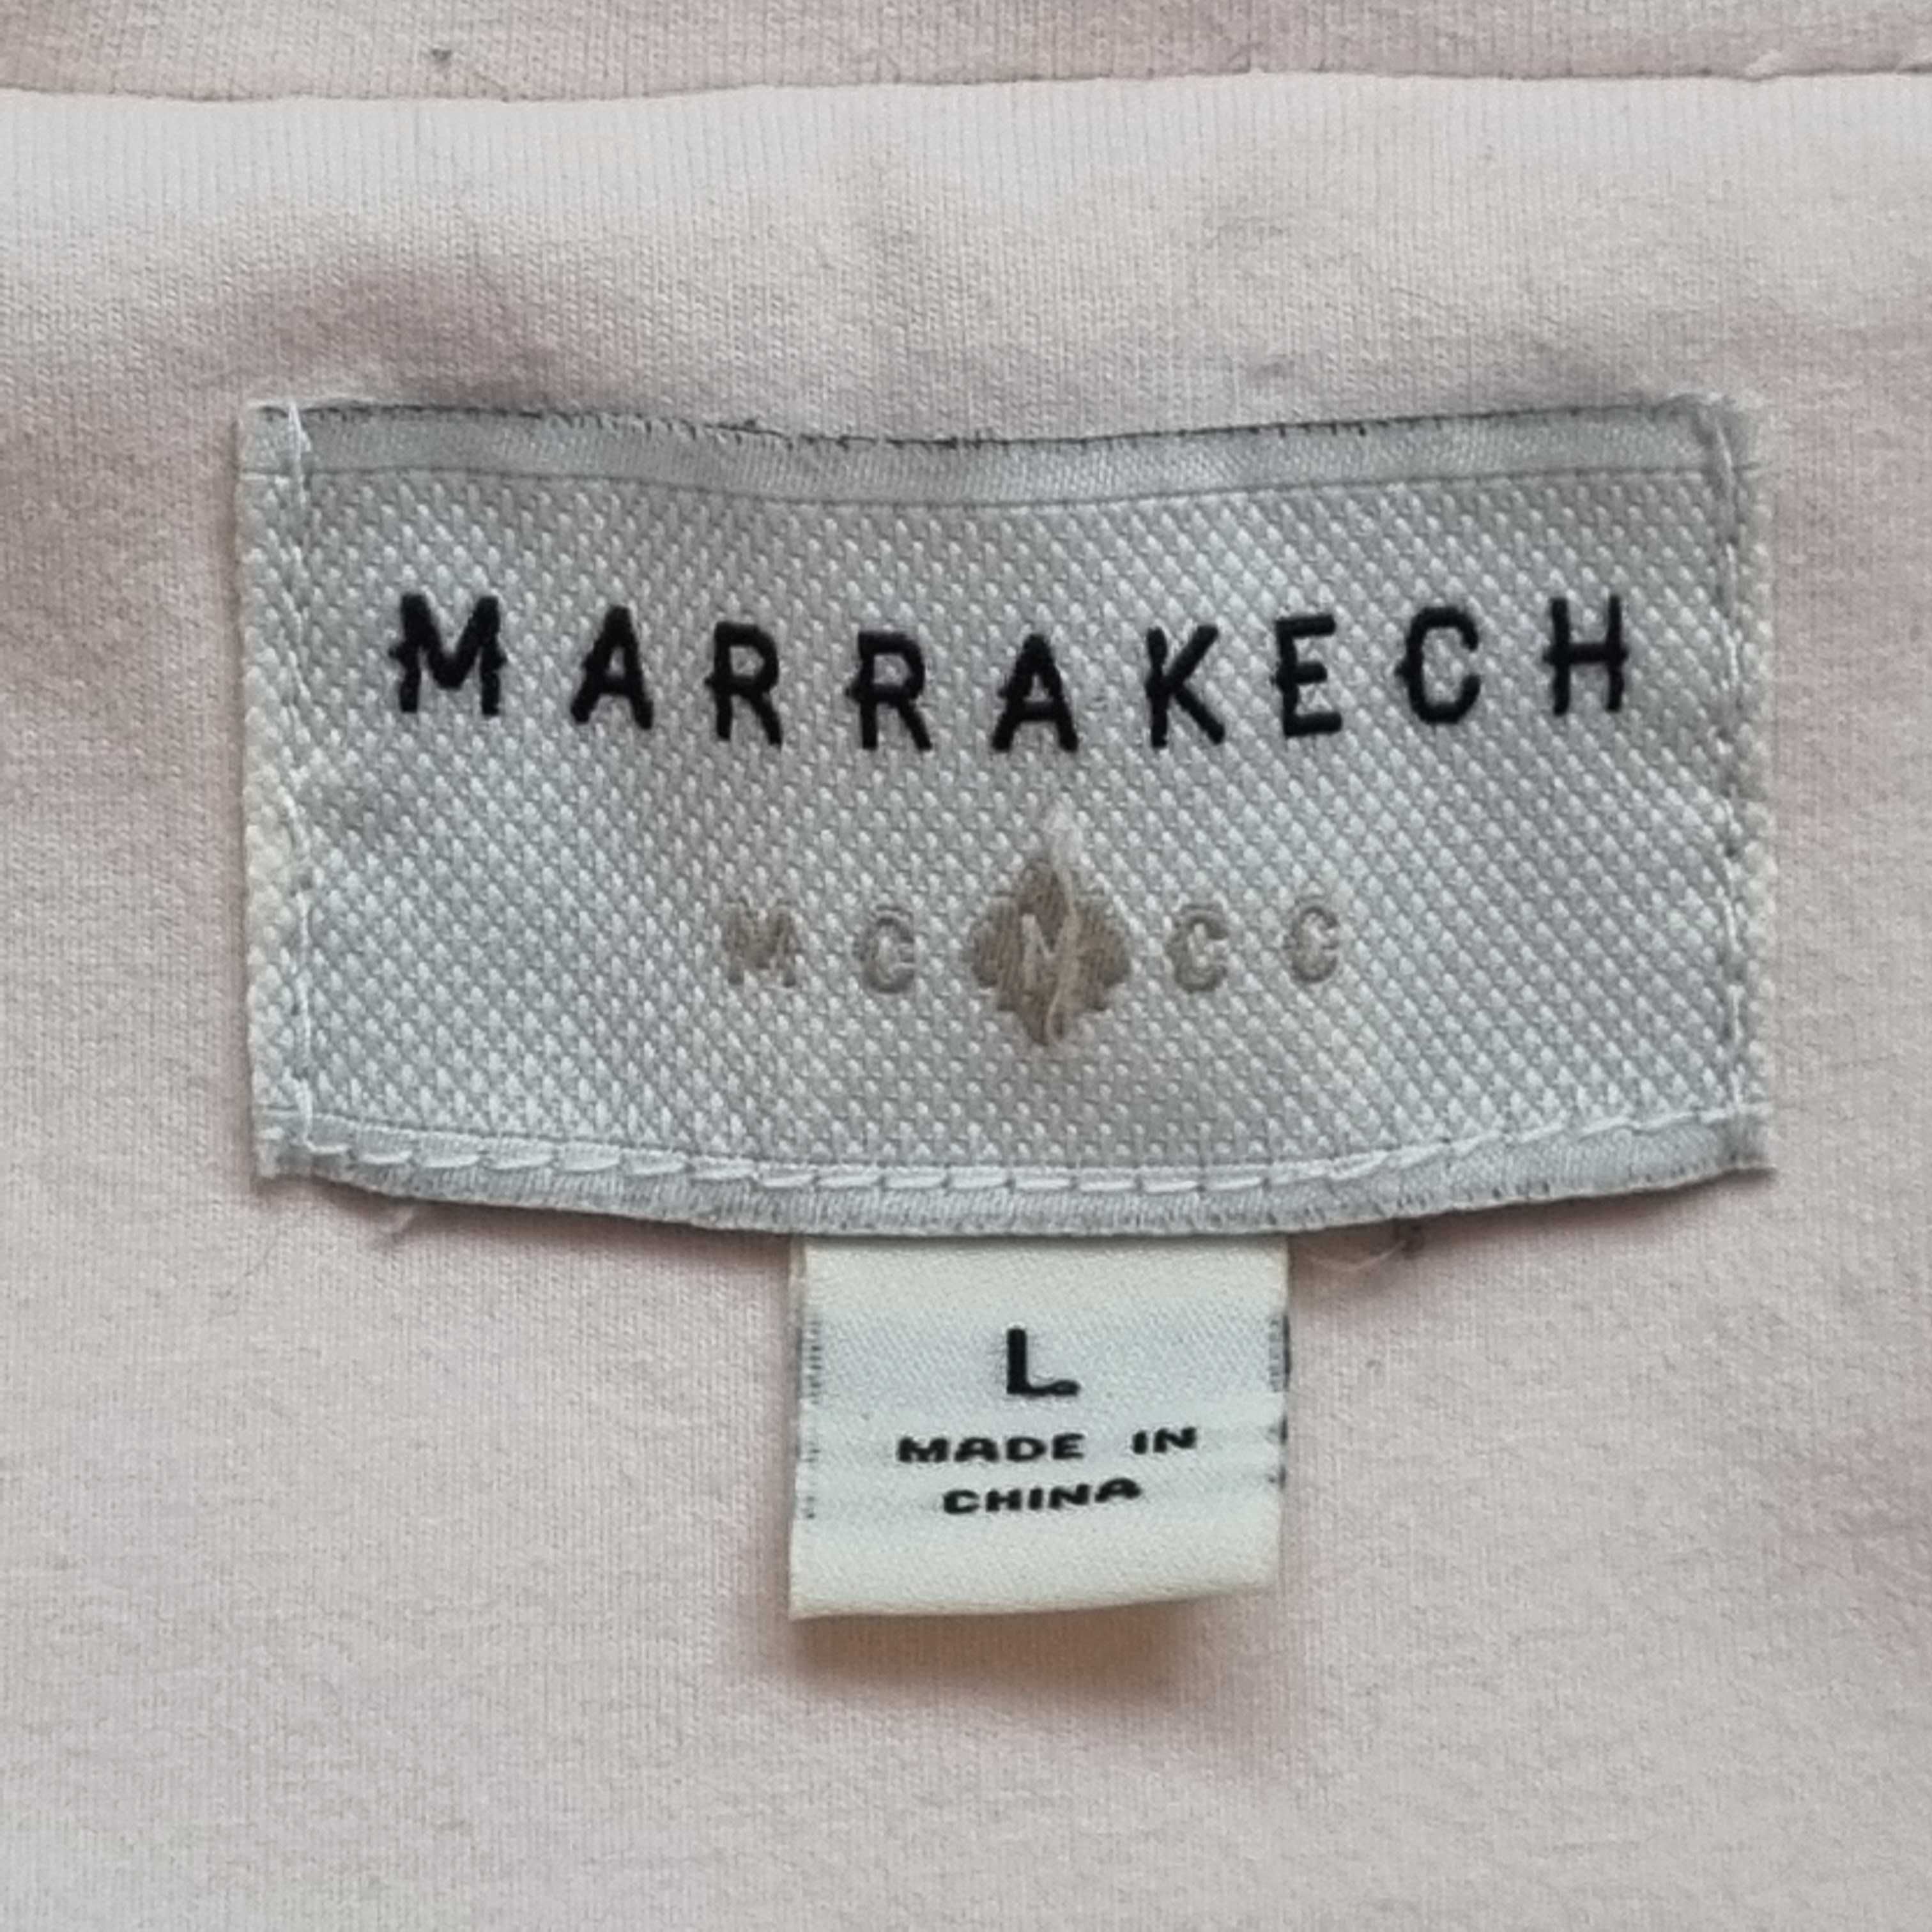 Kurtka bluza żakiet damski Marrakech rozmiar L